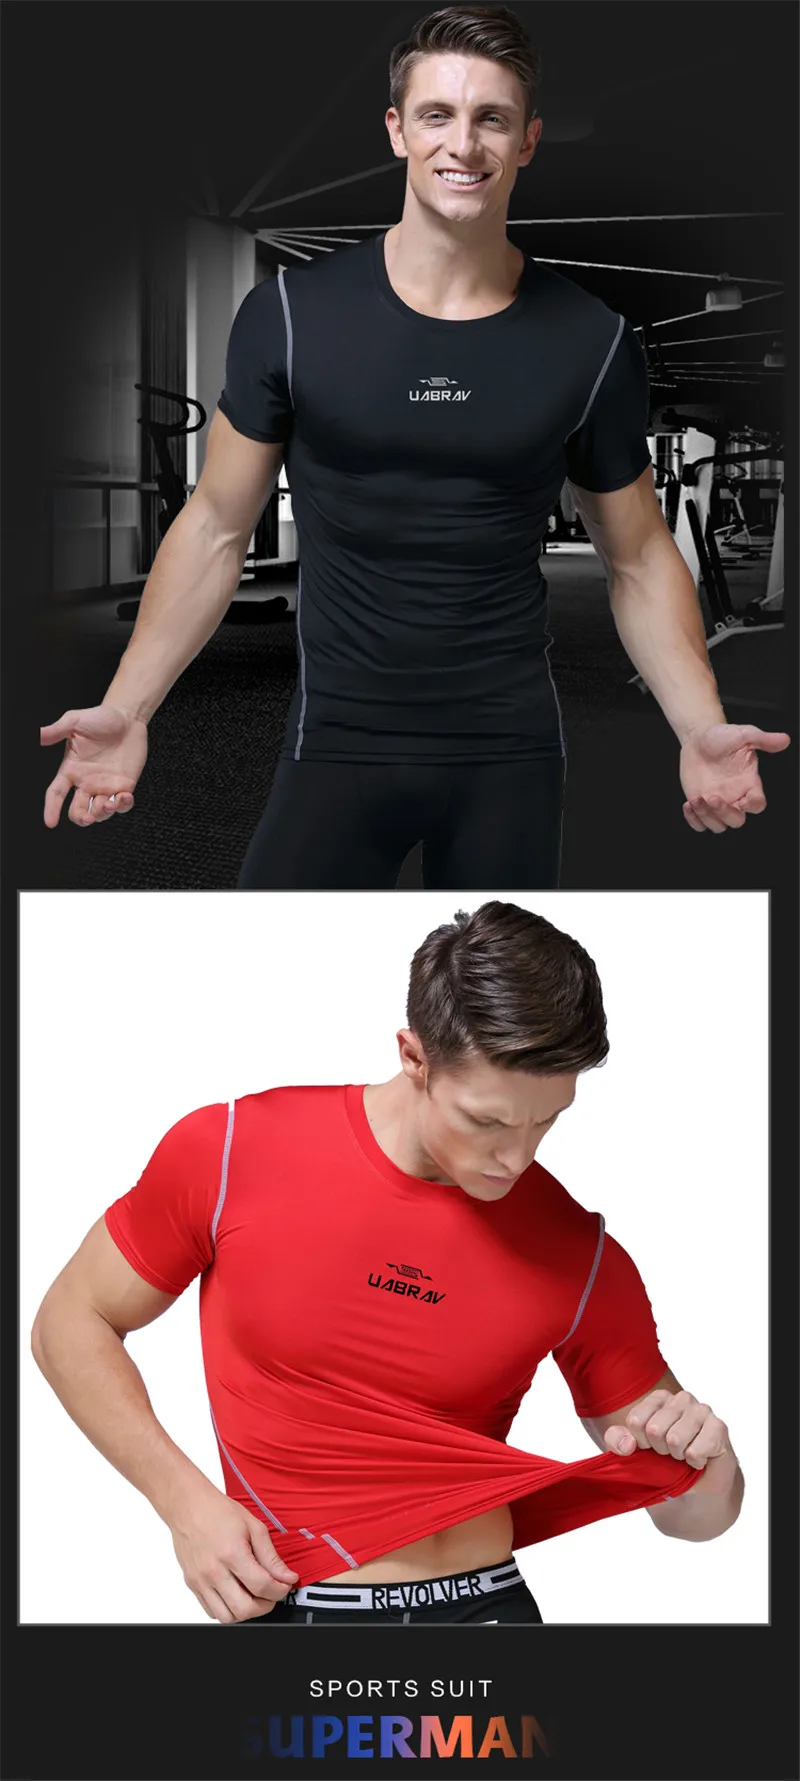 Compression фитнес мужские компрессионные рубашки быстросохнущие спортивные лосины Фитнес Бодибилдинг беговые футболки мужские облегающие футболки спортивная одежда